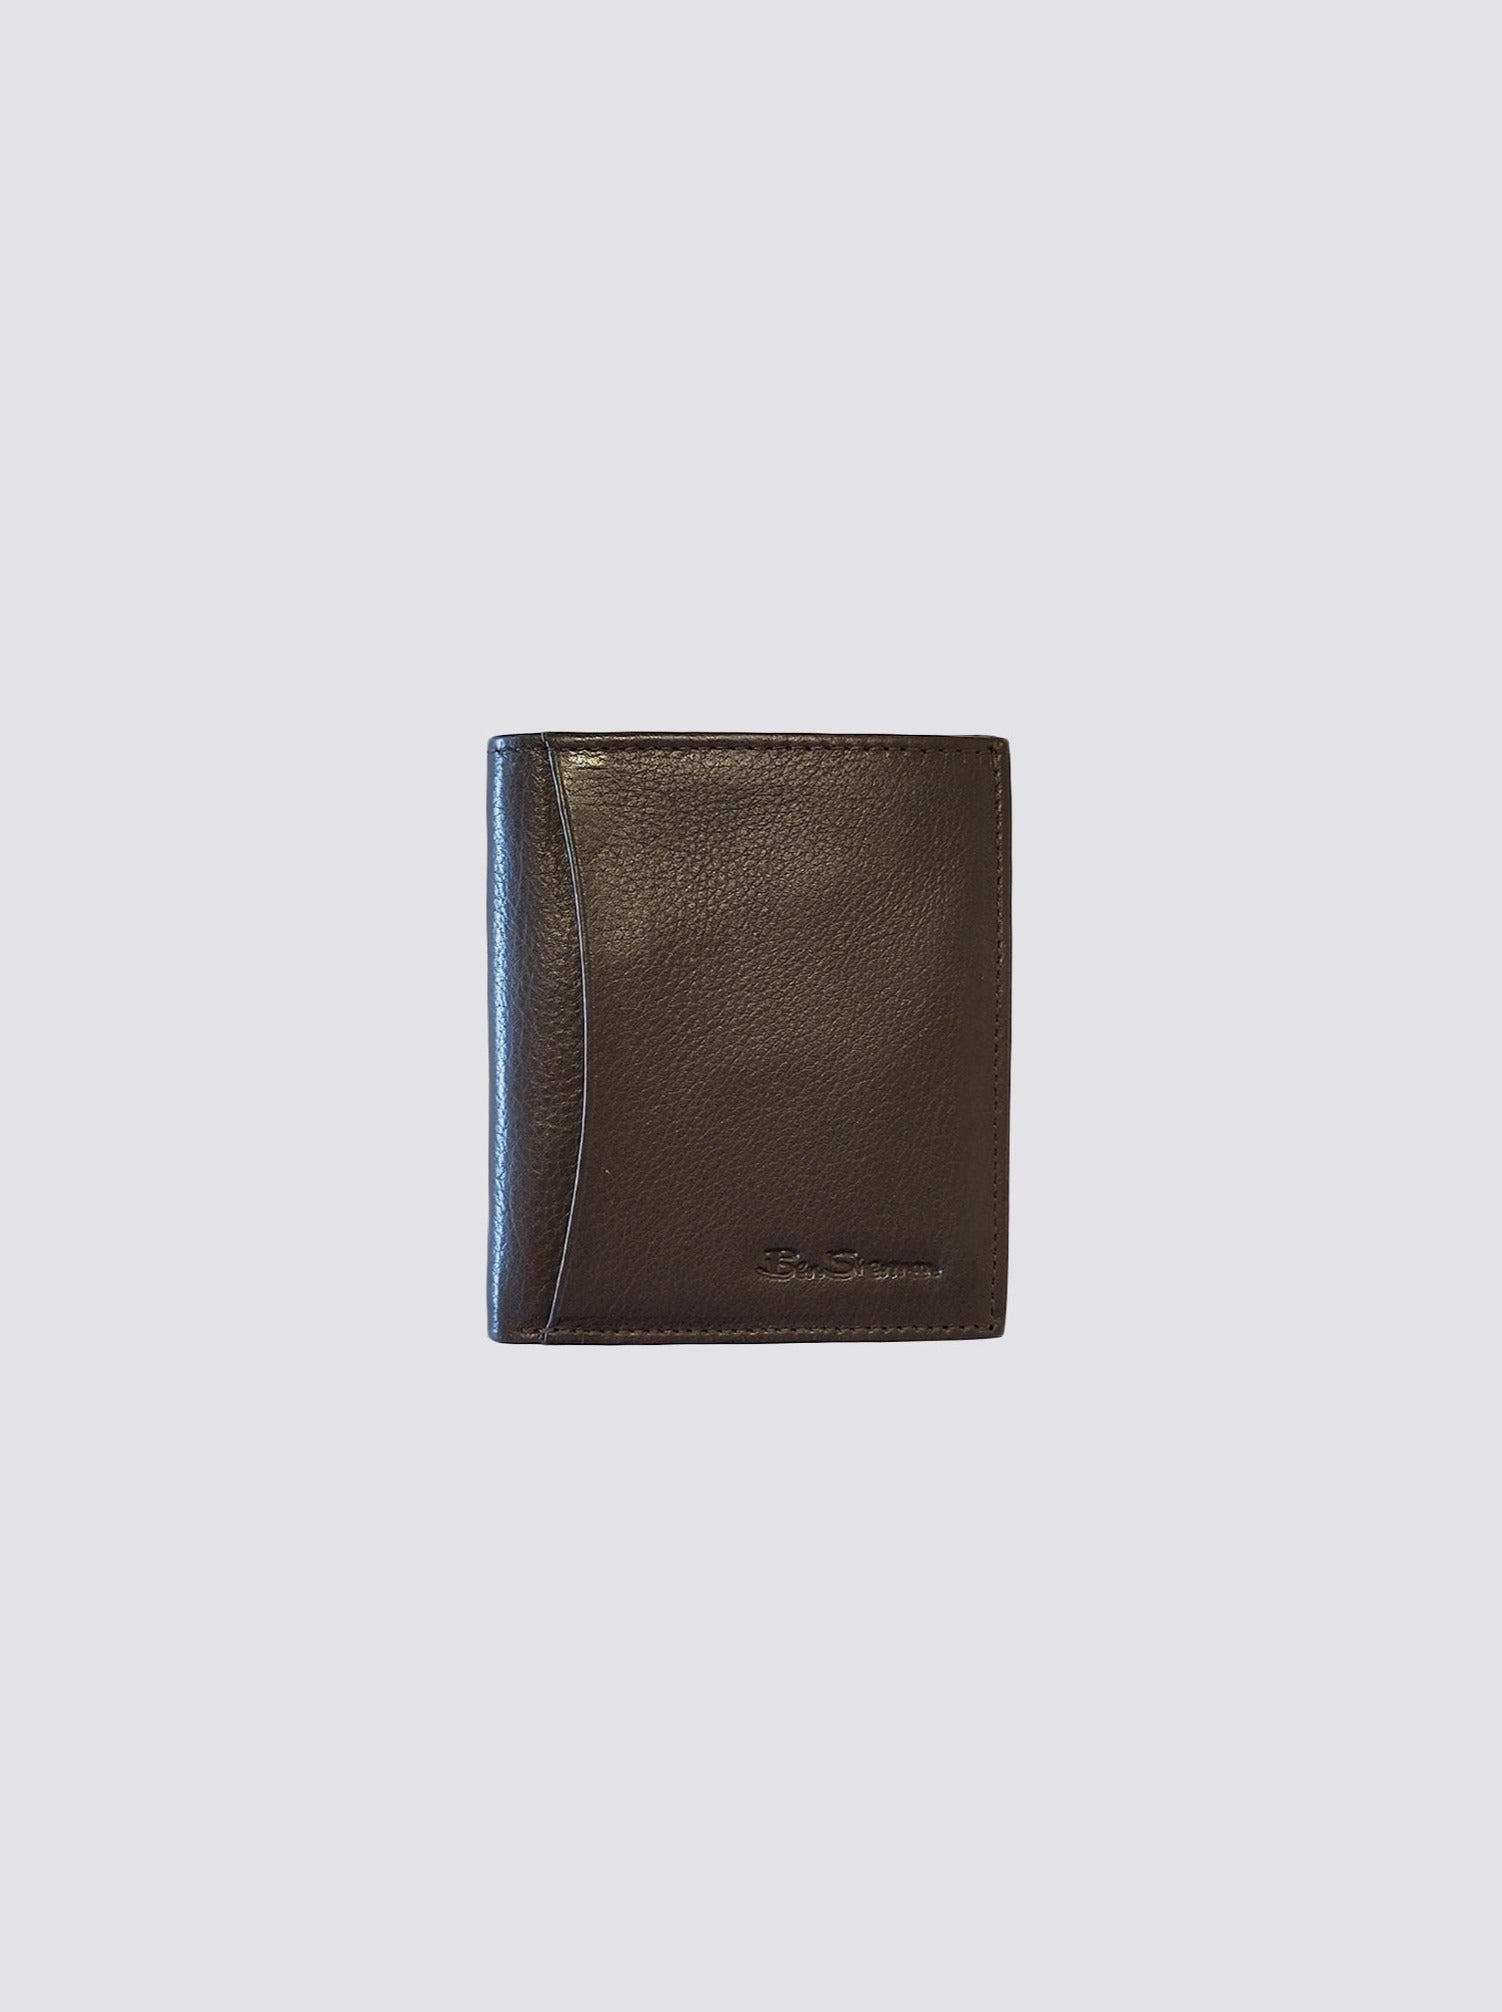 vuitton micro wallet